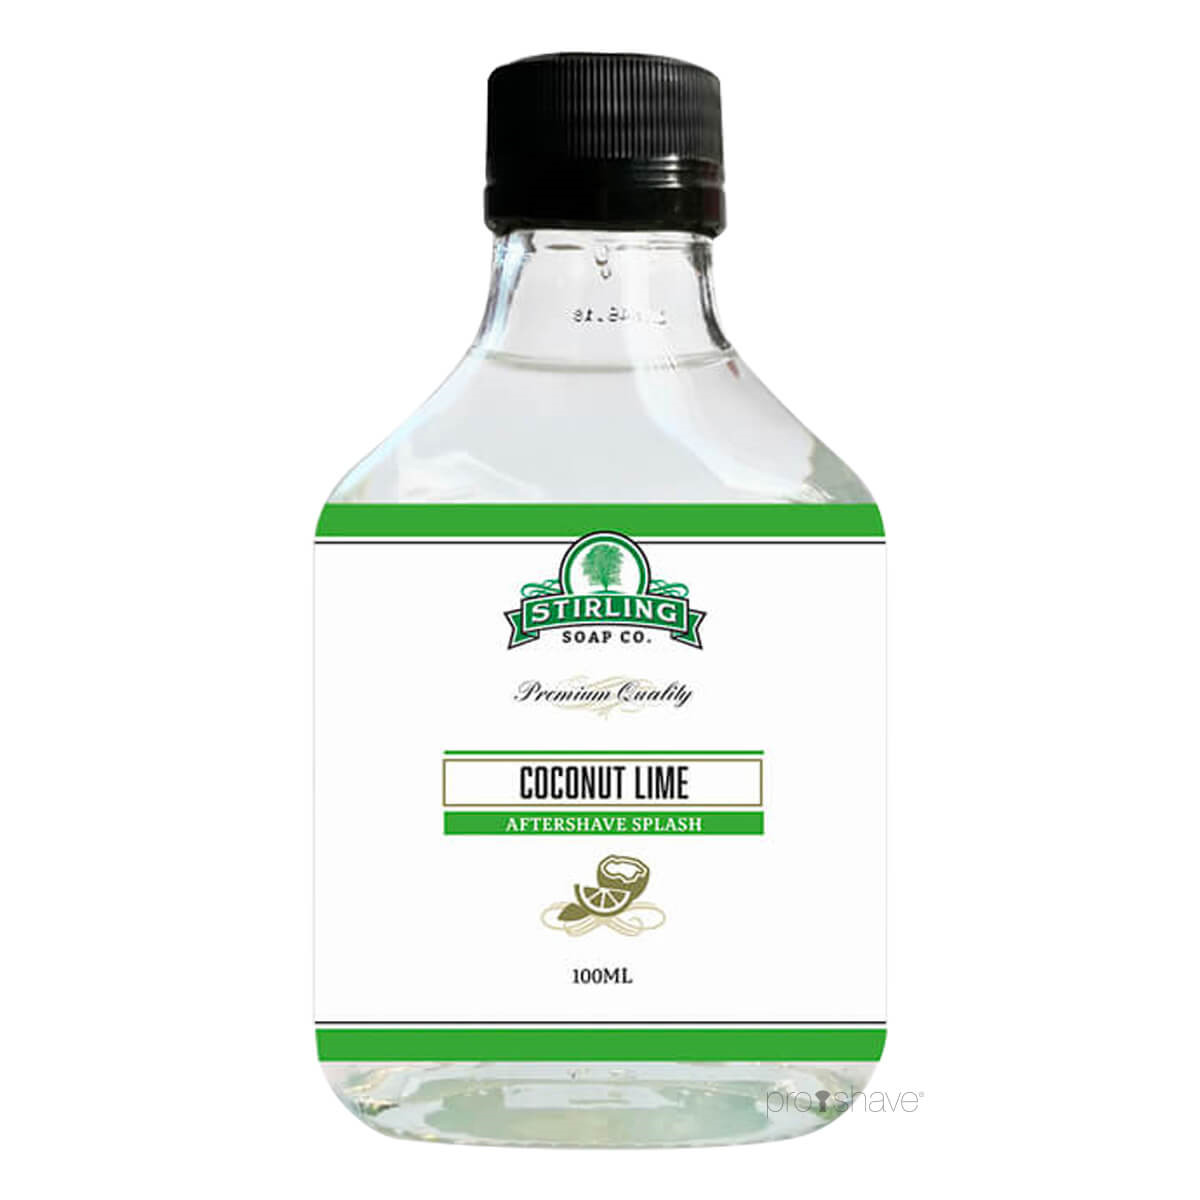 Stirling Soap Co. Aftershave Splash, Coconut Lime, 100 ml.